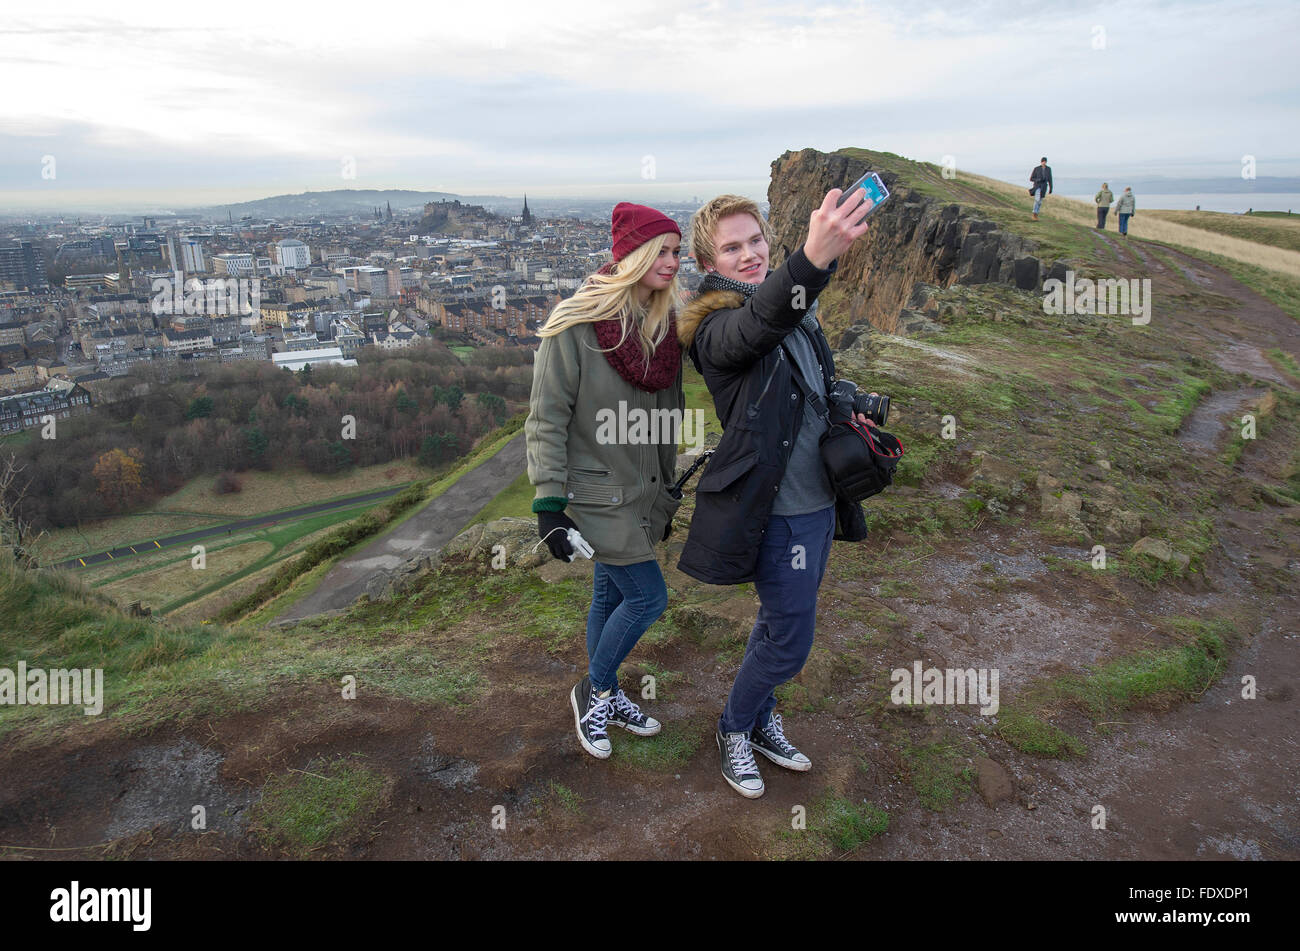 Edimburgo, Scozia, Regno Unito. Gli studenti norvegesi prendere un selfie su Salisbury Crags Holyrood Park con il Castello di Edinburgo e la città vecchia come sfondo. Foto Stock